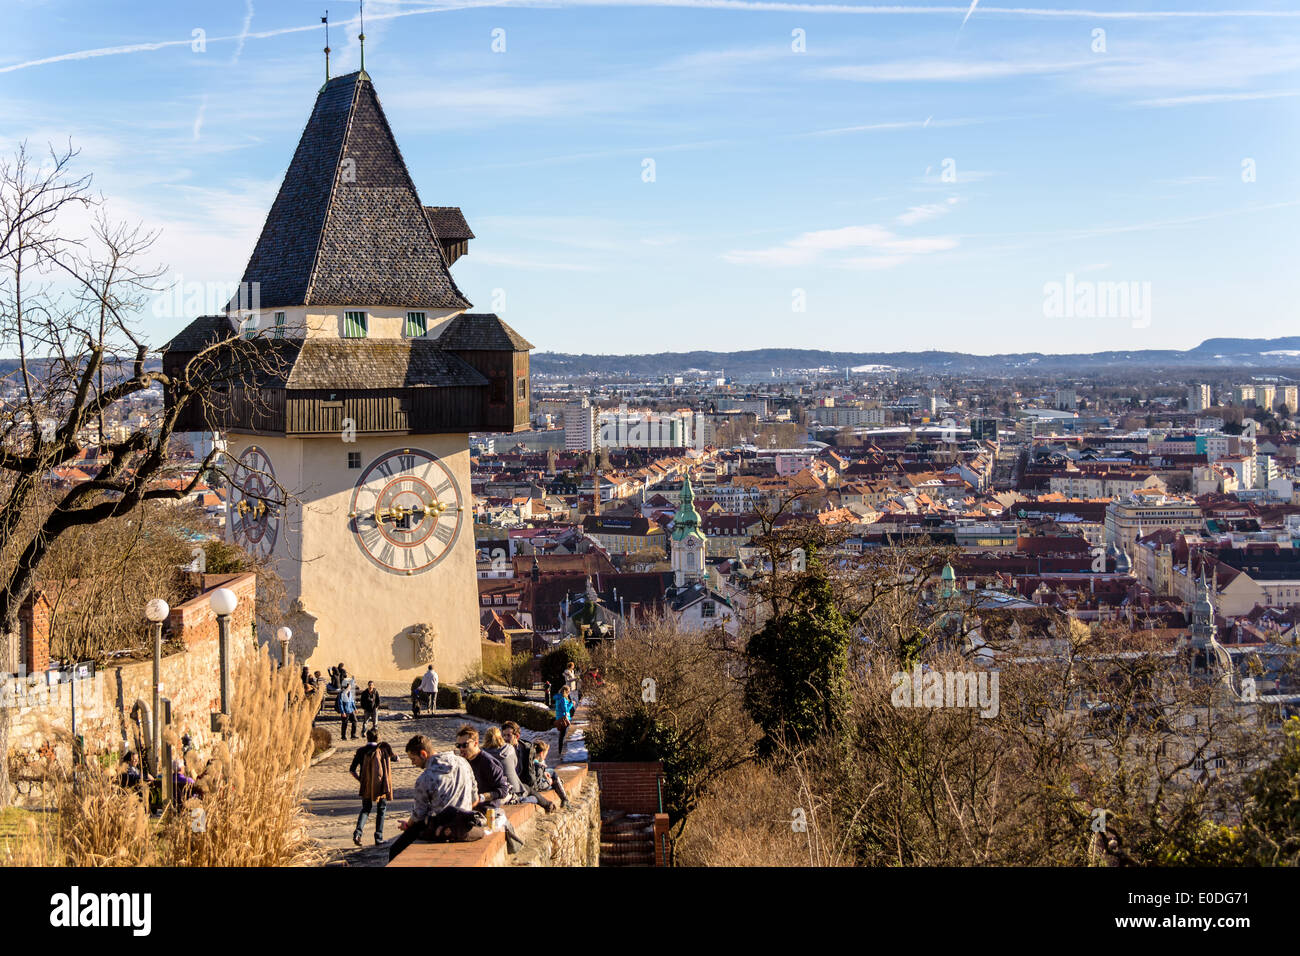 Der Uhrturm ist das Wahrzeichen der Stadt Graz. Hauptstadt der Steiermark in Österreich, Der Uhrturm ist Das Wahrzeichen der Stadt Graz. Stockfoto